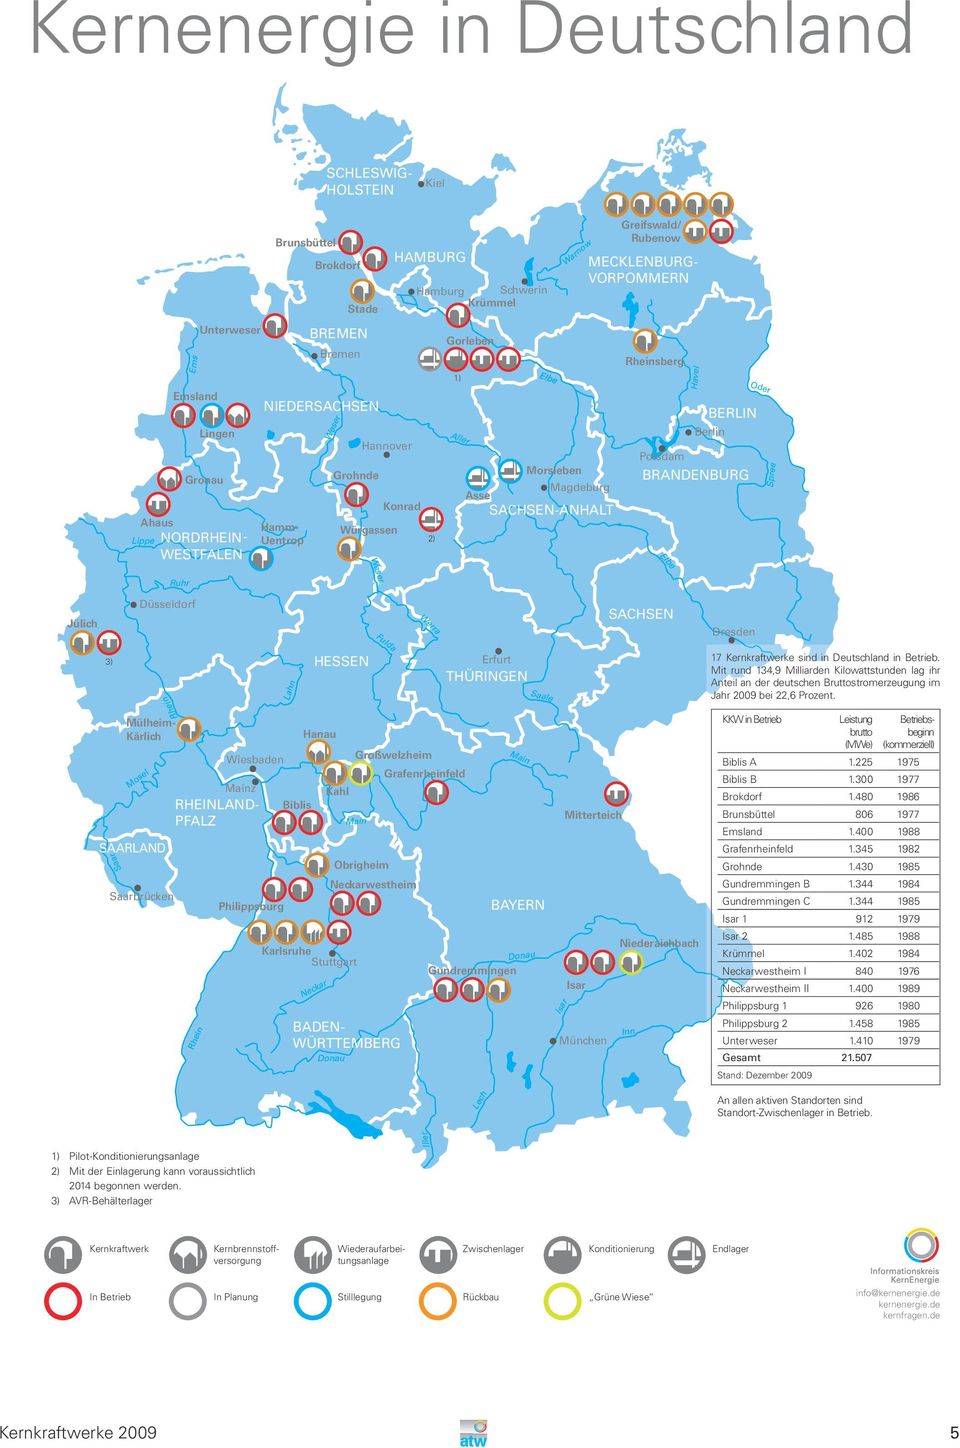 Spree Weser Ruhr Jülich Düsseldorf Werra SACHSEN Dresden 3) Lahn HESSEN Erfurt THÜRINGEN Saale 17 Kernkraftwerke sind in Deutschland in Betrieb.